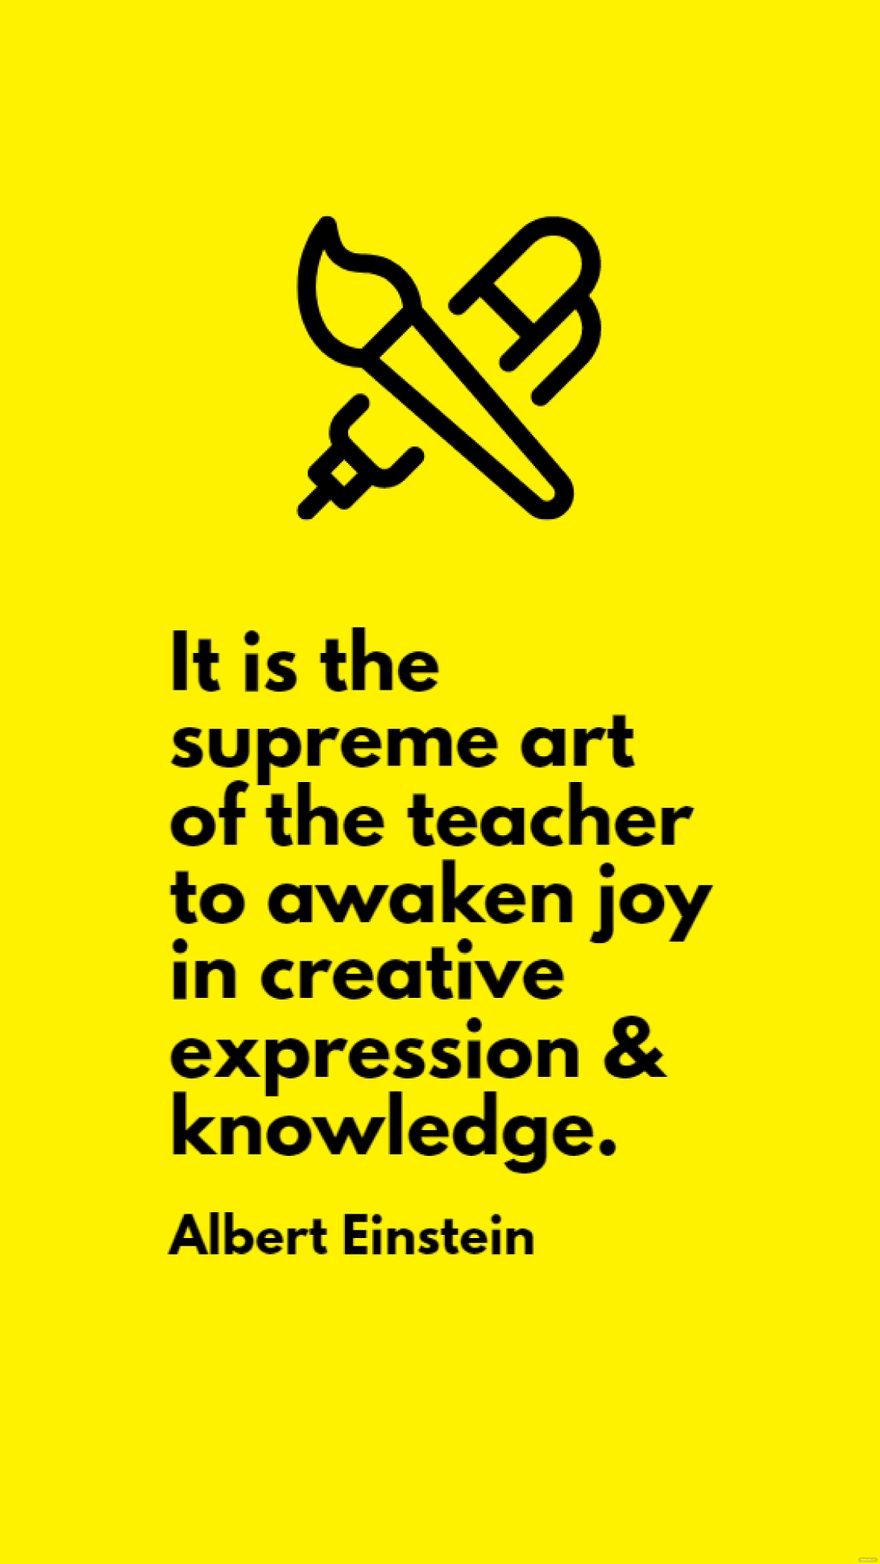 Albert Einstein - It is the supreme art of the teacher to awaken joy in creative expression & knowledge. in JPG